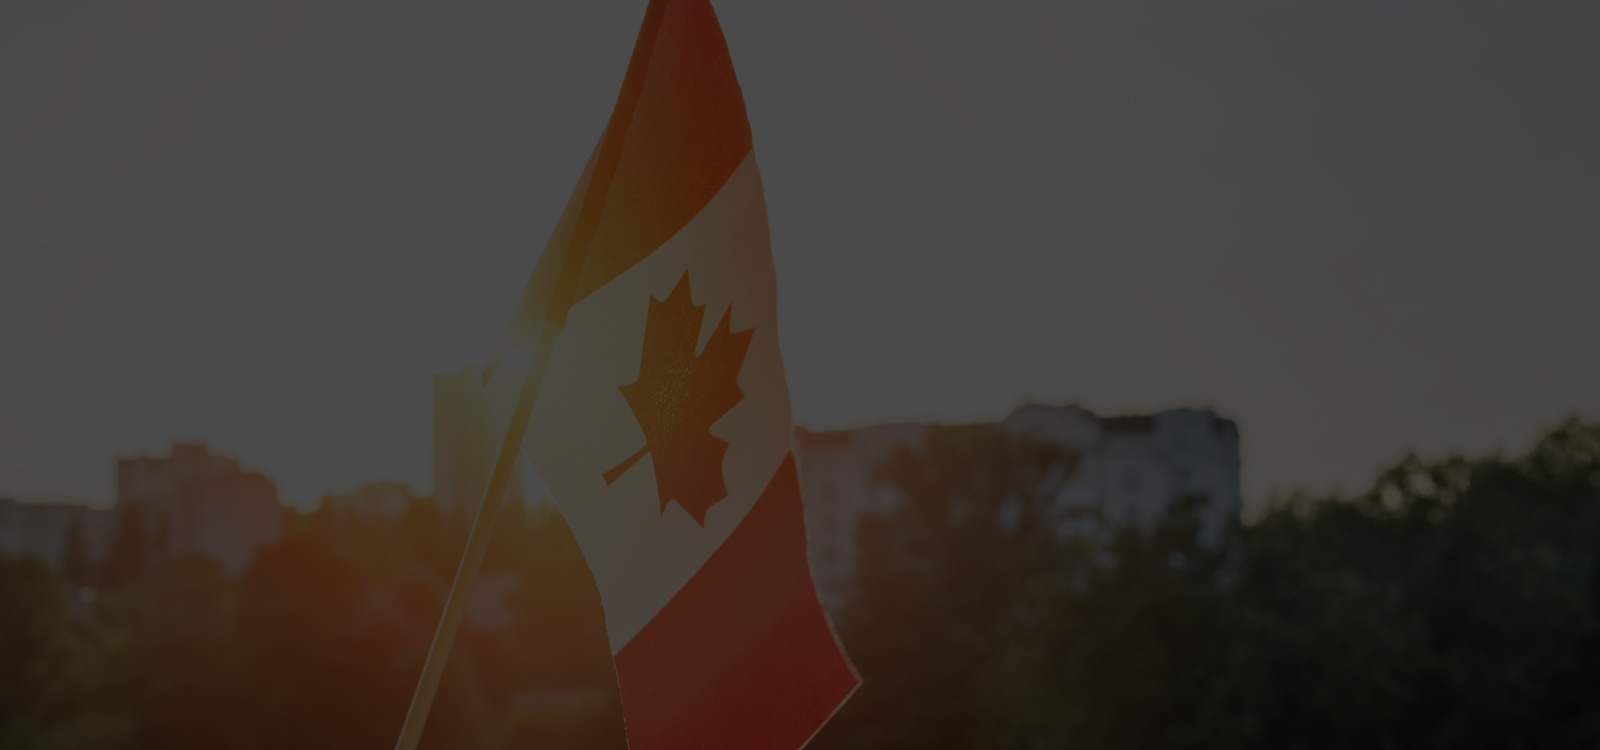 Notre occasion : réaliser le potentiel du Canada dans l’économie numérique mondiale